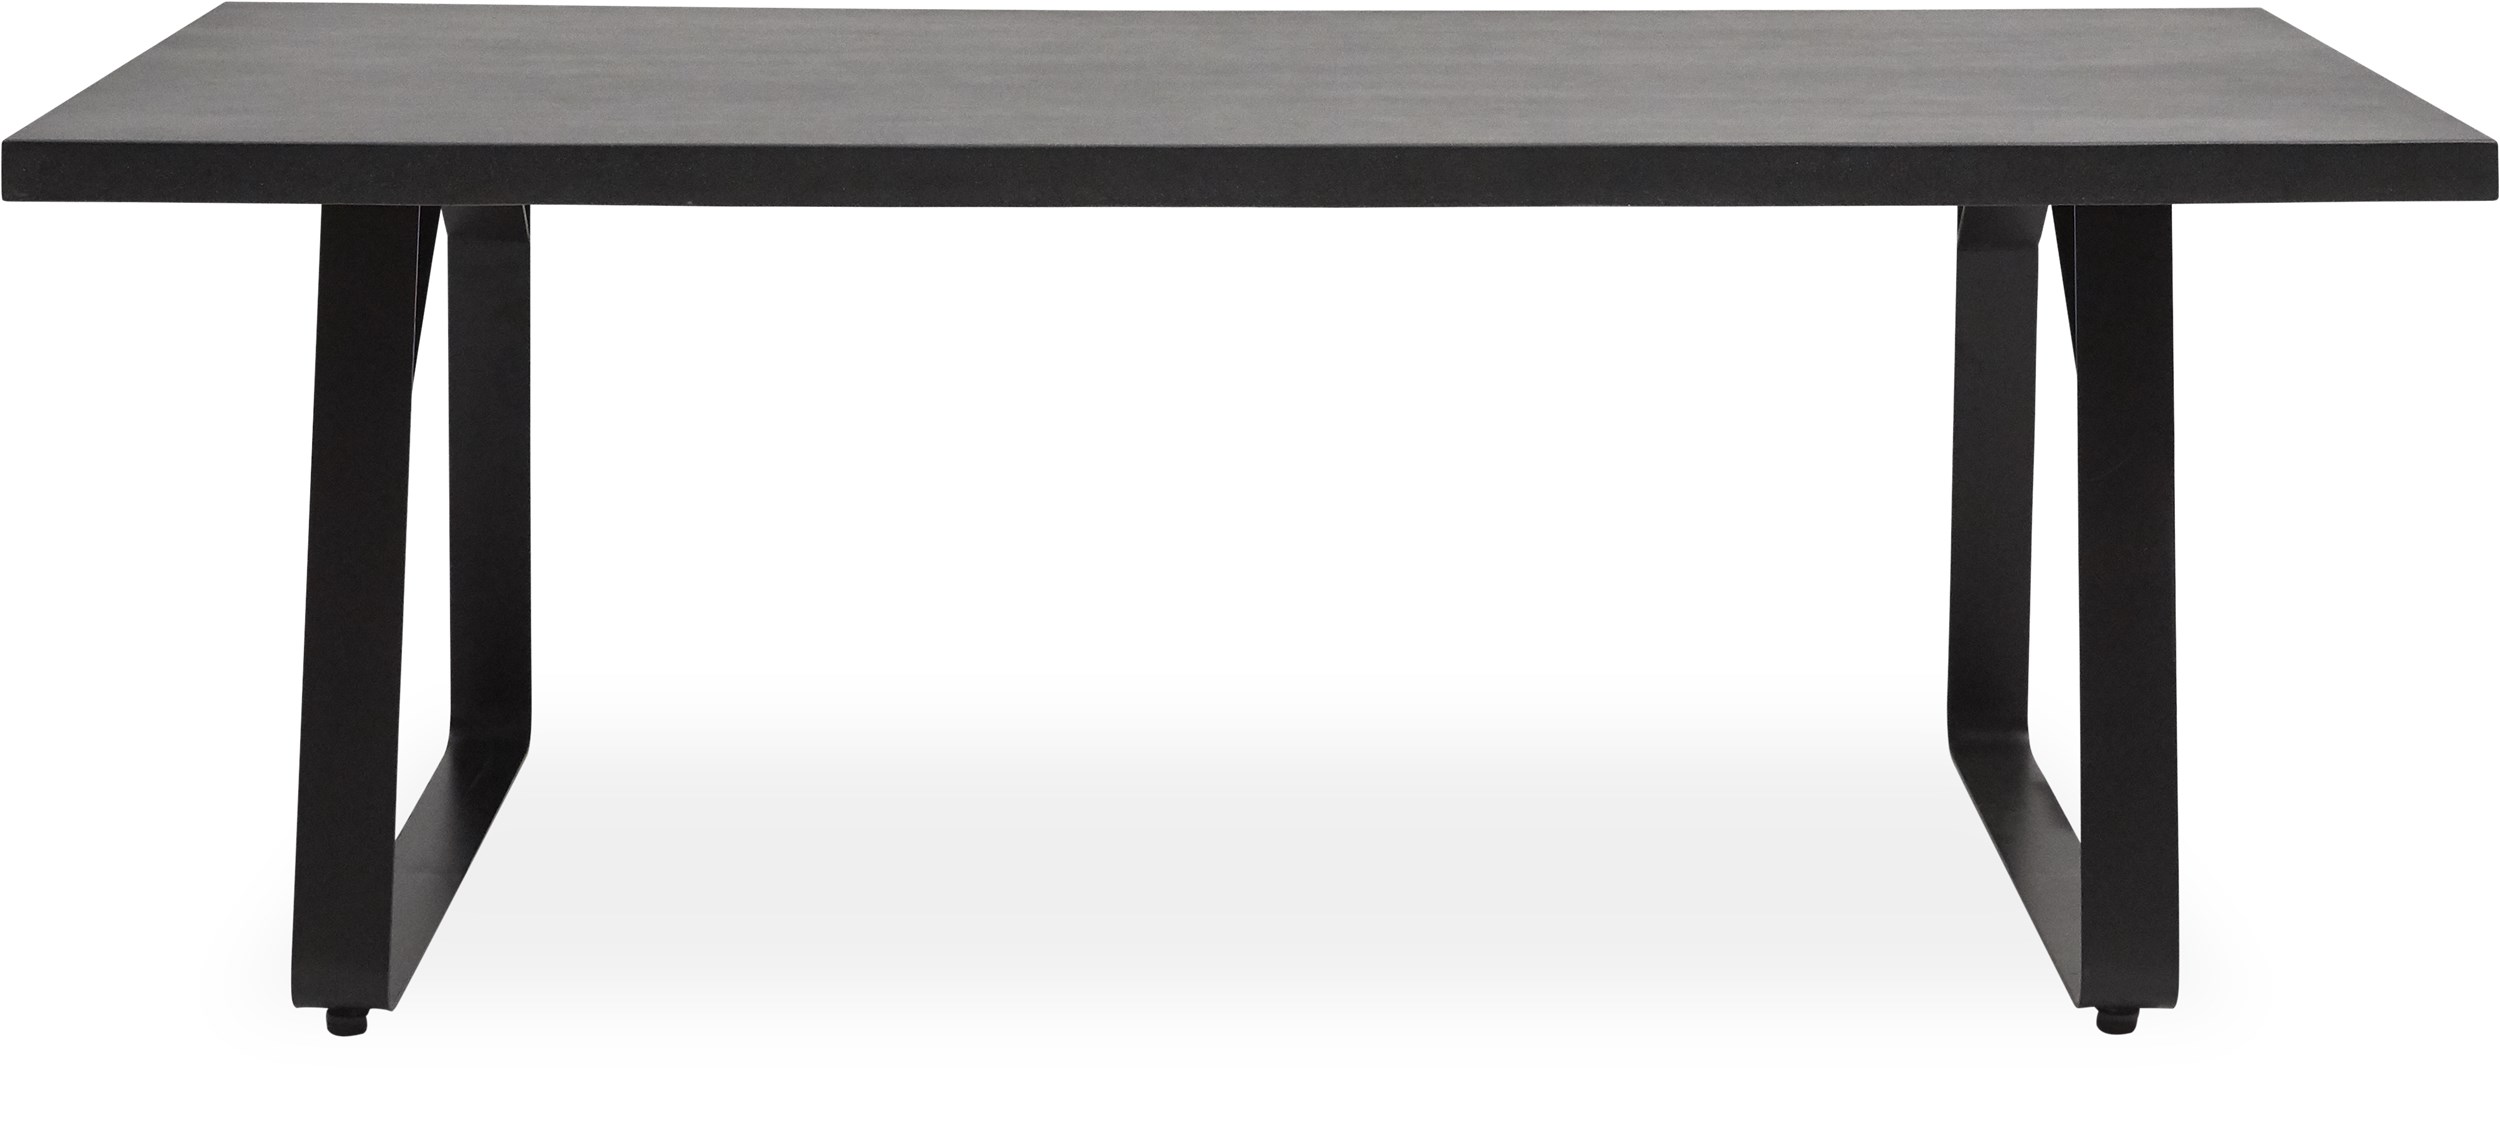 Milford Trädgårdsbord 200 x 90 x 75 cm - Bordsskiva i mörkgrå polystone och stomme i galvaniserad, svart, pulverlackerad metall